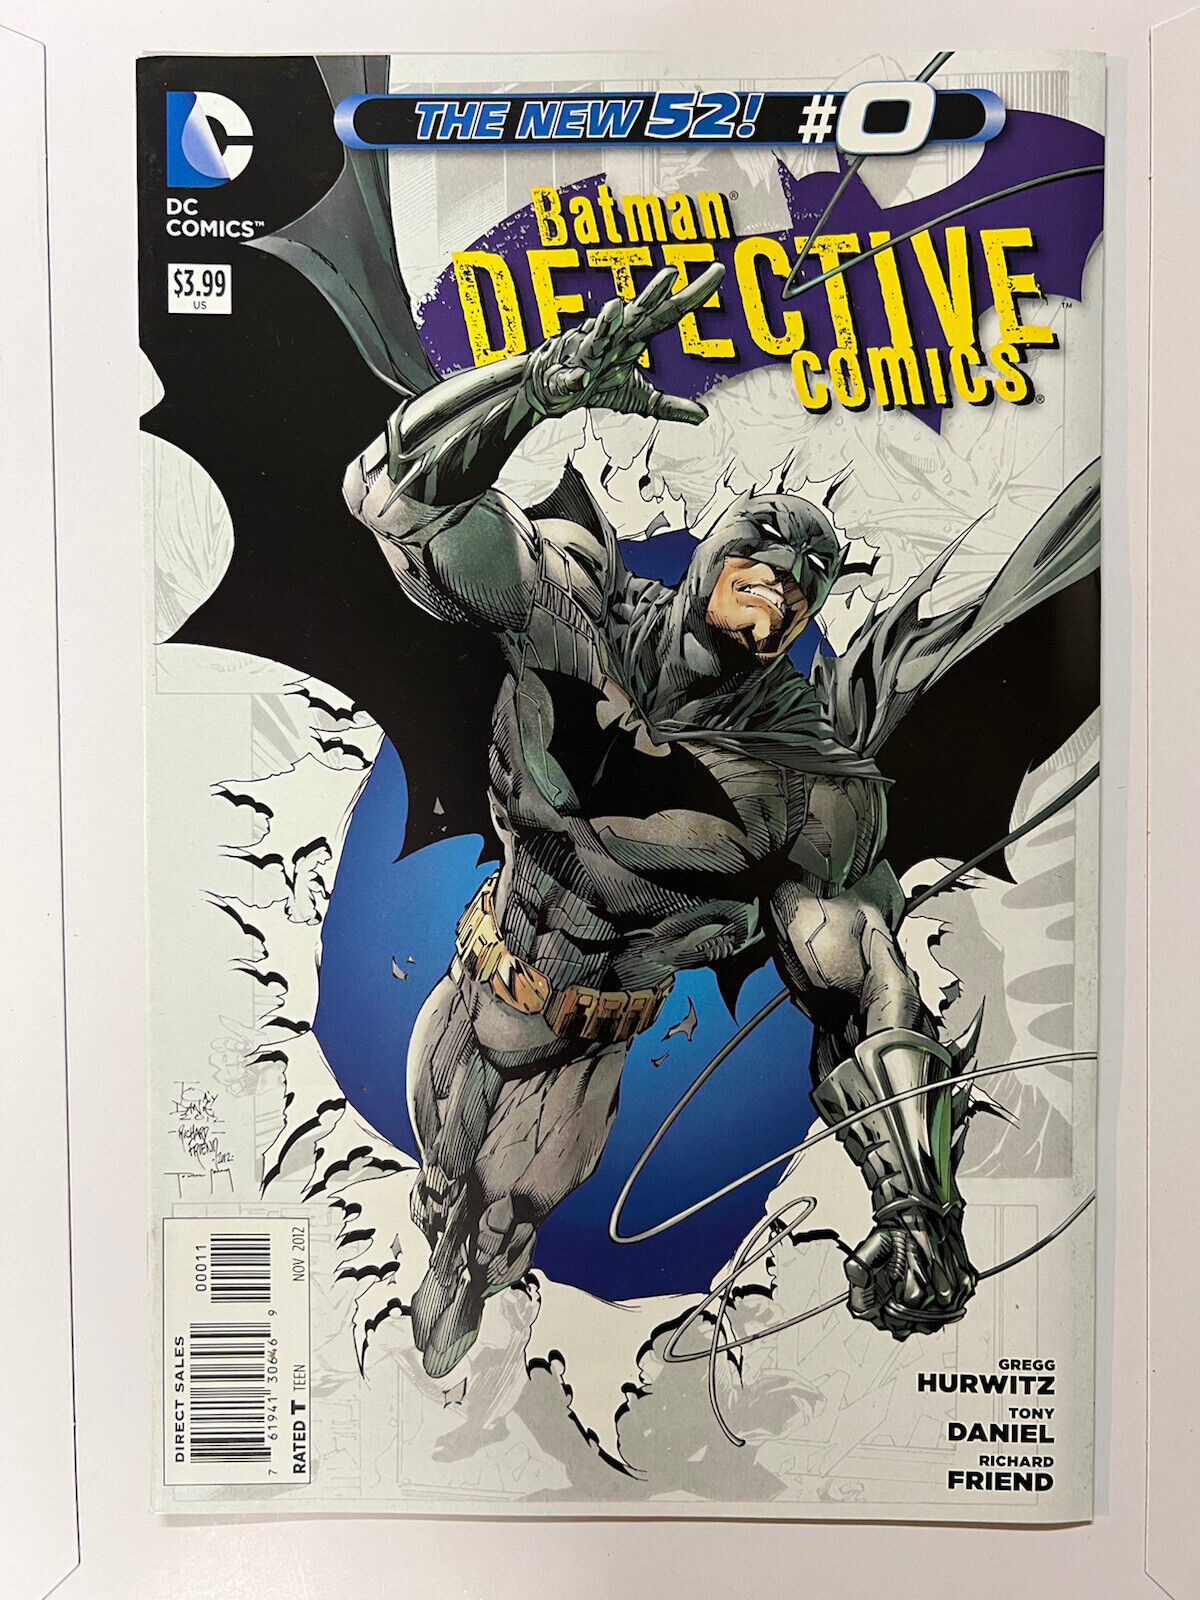 Batman -Detective Comics #0 -DC Comics 2012- The New 52 | Combined Shipping 